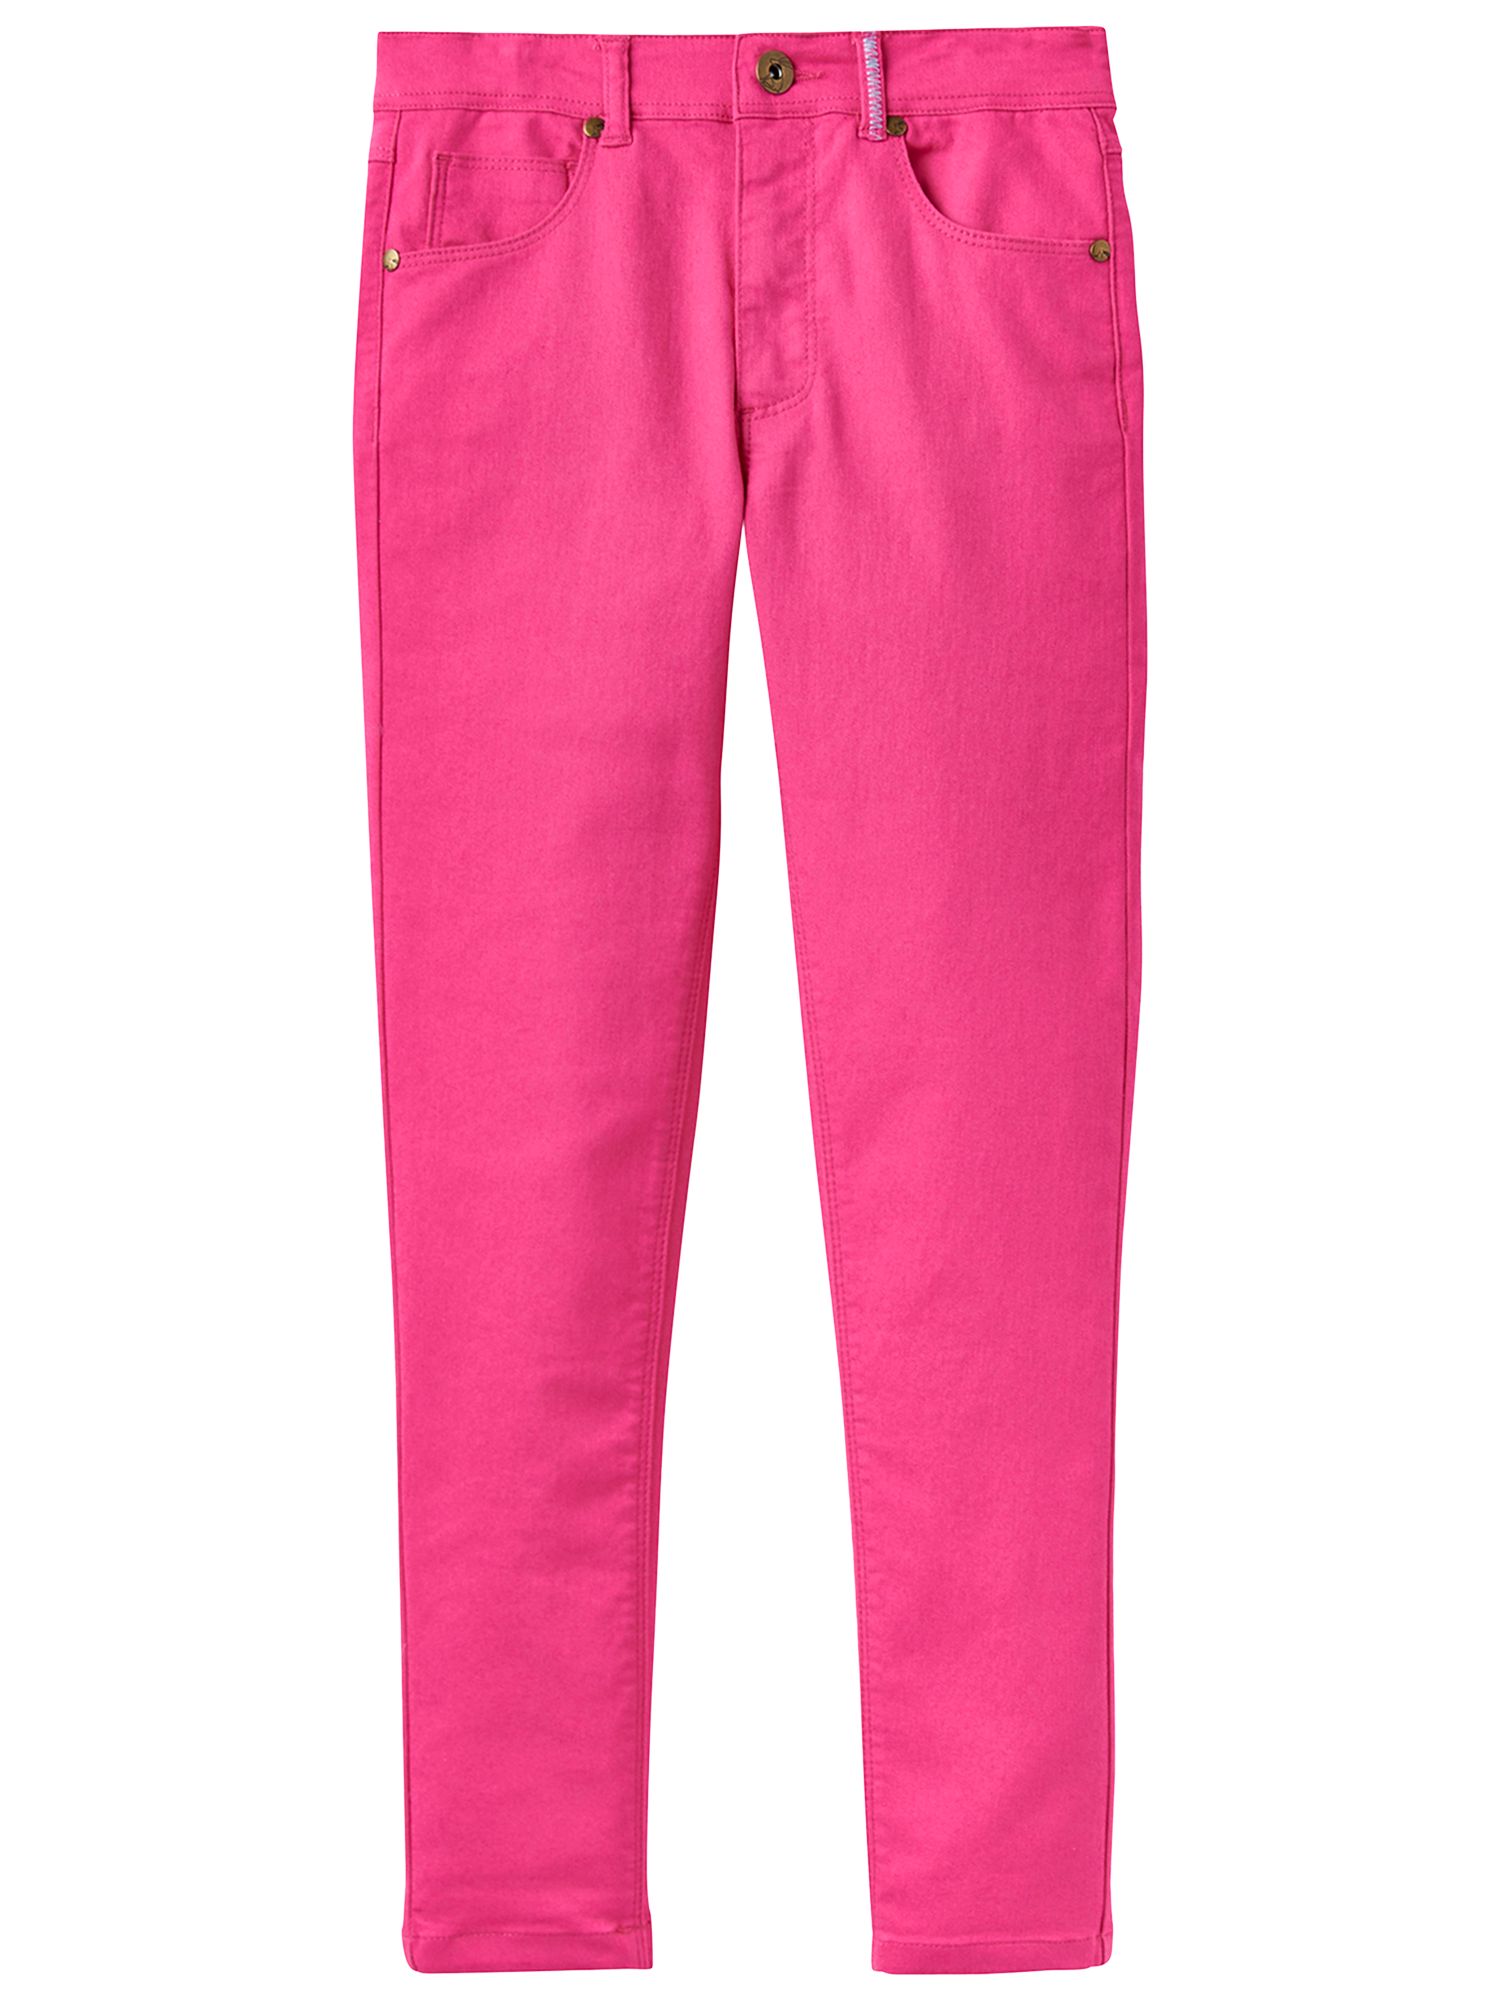 pink denim jeans ladies